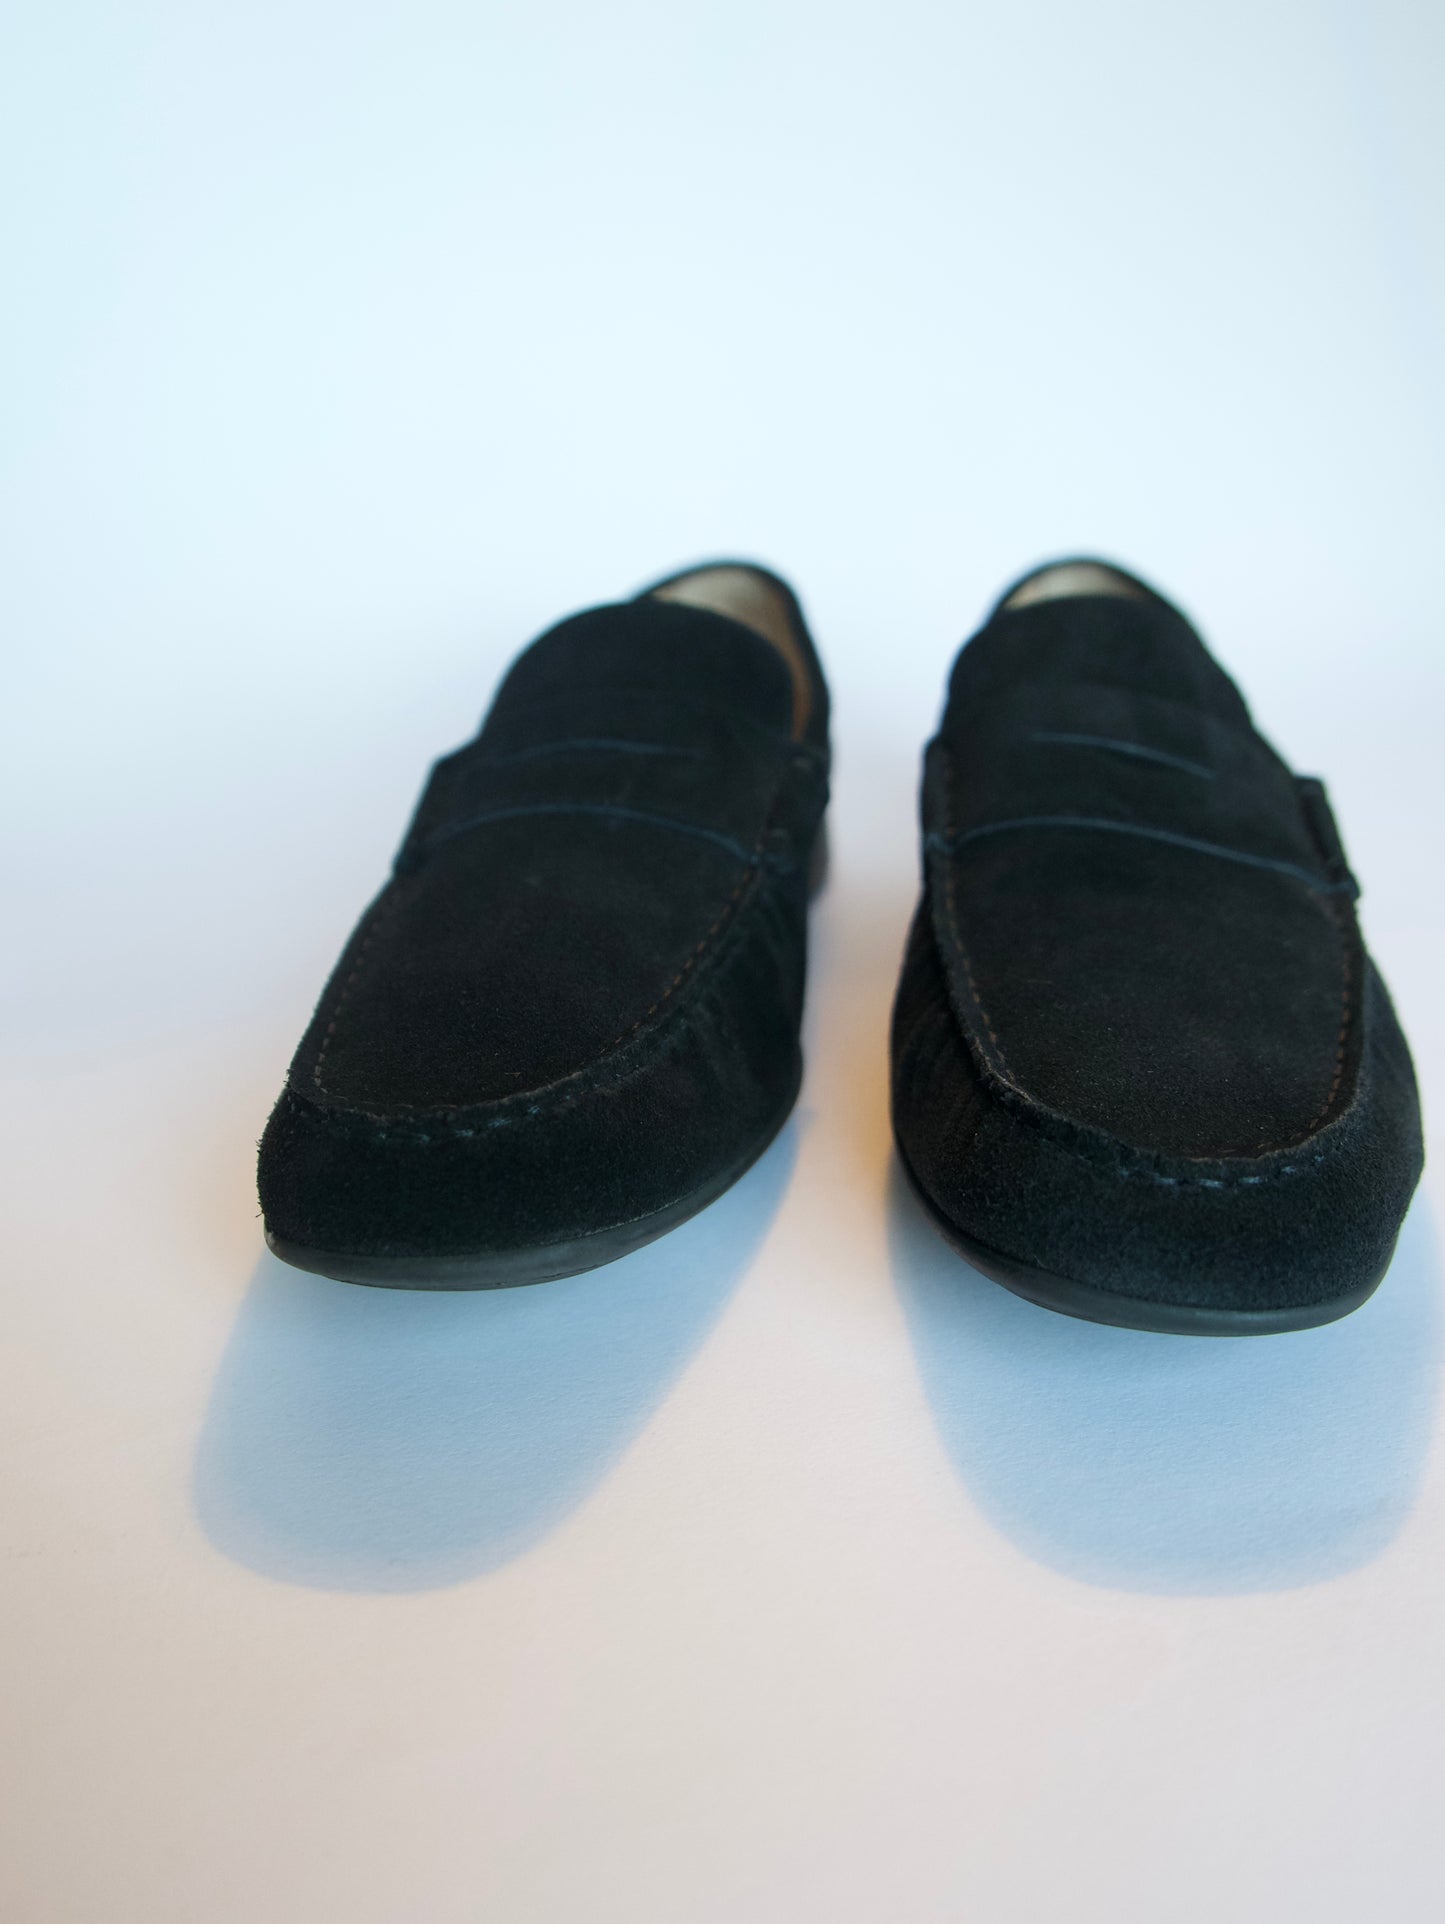 Crockett & Jones Genoa Black Suede Driving Penny Loafers, Size 8